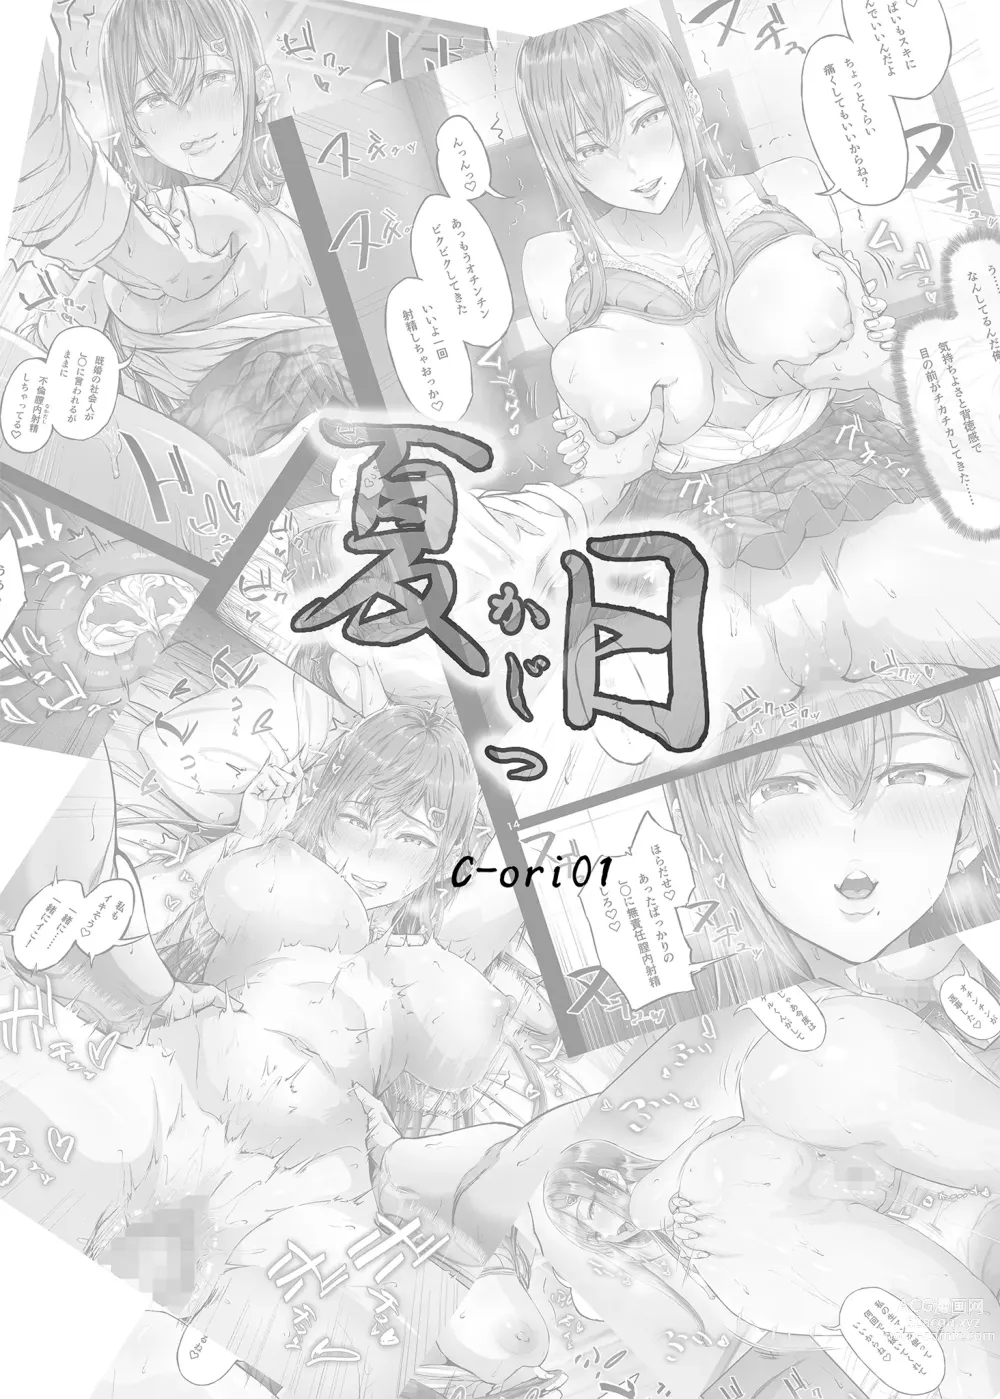 Page 4 of doujinshi Kajitsu C-ori01